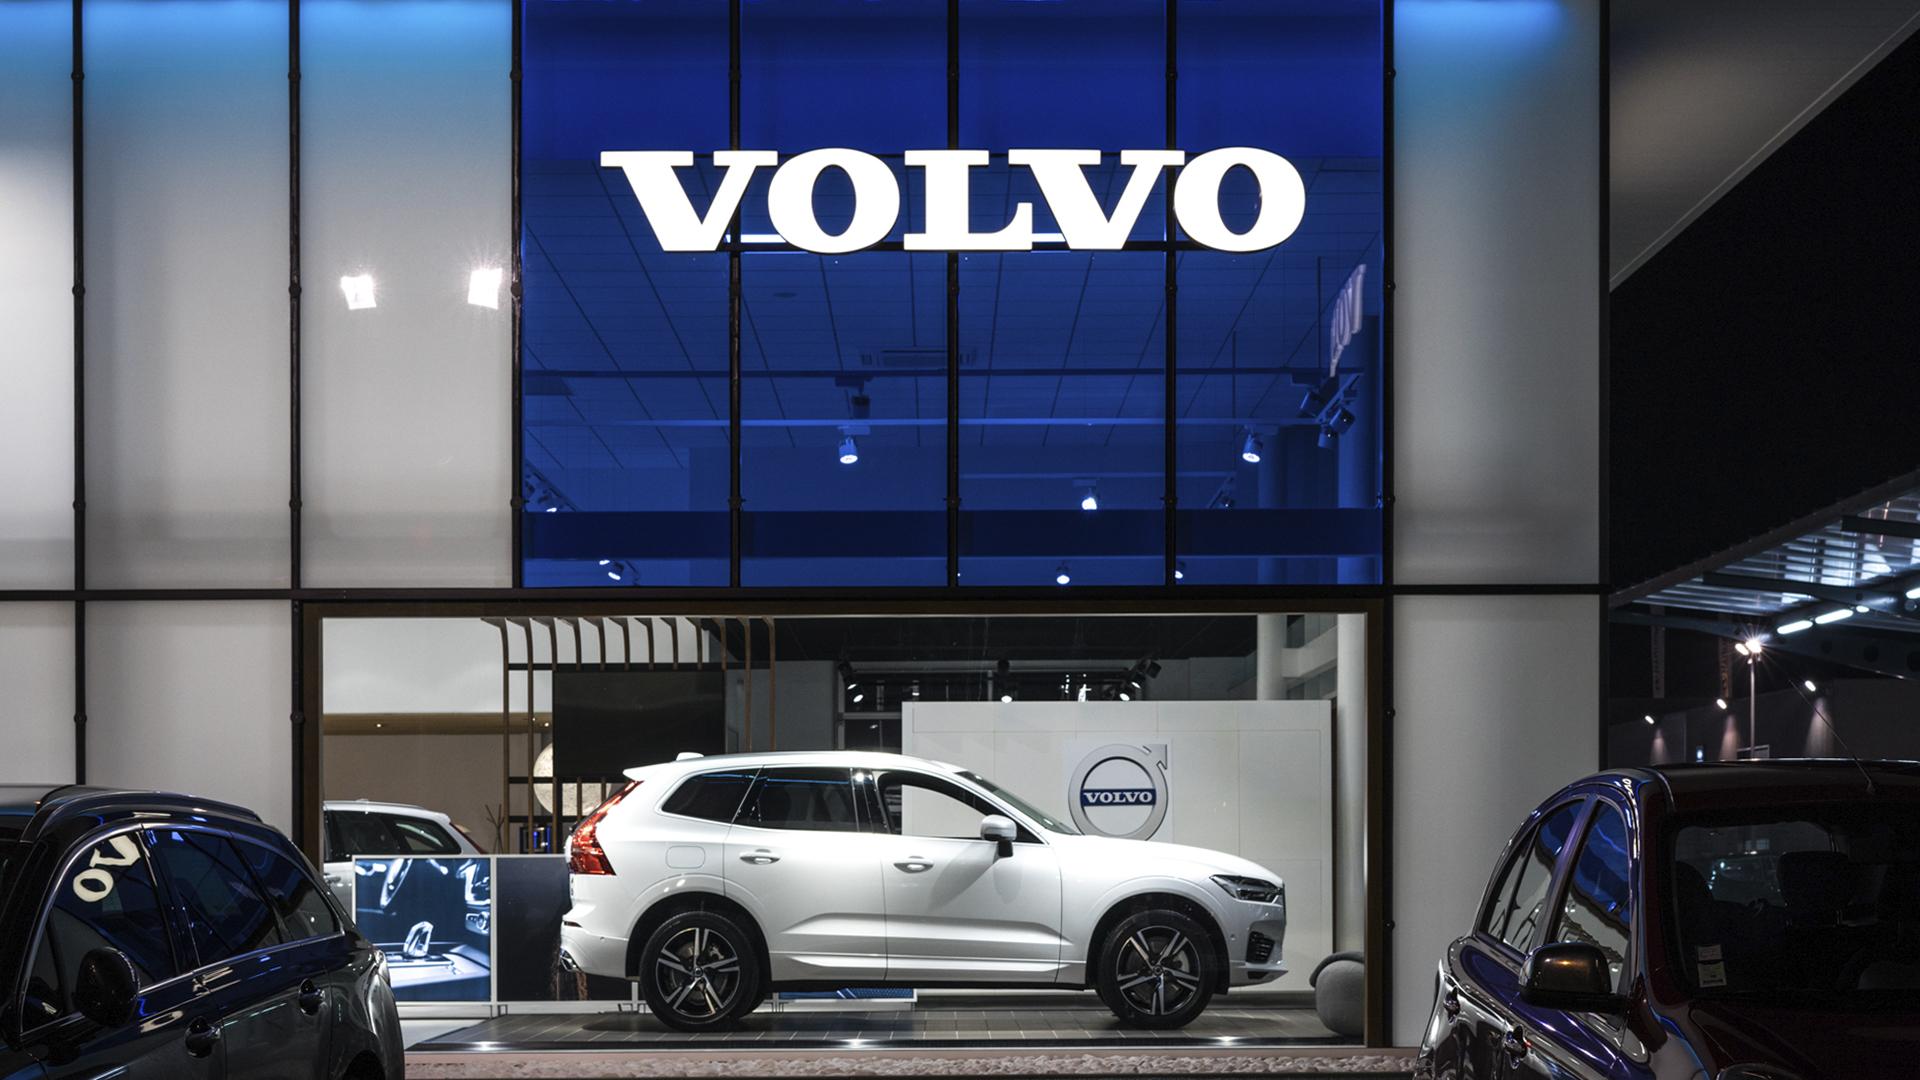 Светящаяся вывеска  Volvo произведена Visotec